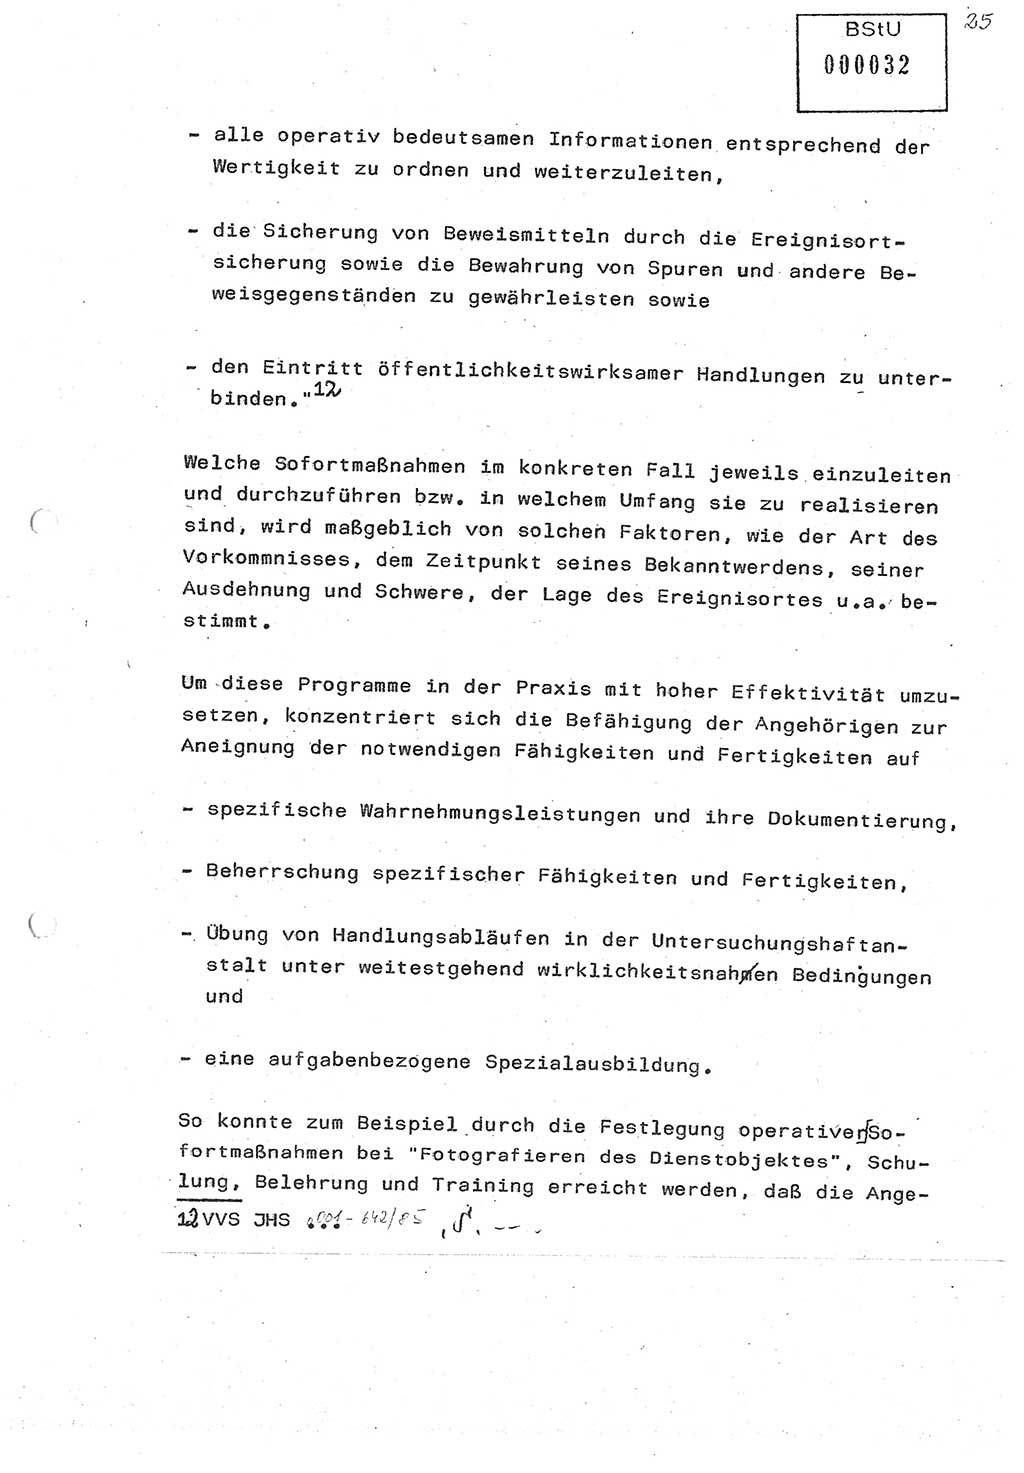 Diplomarbeit (Entwurf) Oberleutnant Peter Parke (Abt. ⅩⅣ), Ministerium für Staatssicherheit (MfS) [Deutsche Demokratische Republik (DDR)], Juristische Hochschule (JHS), Geheime Verschlußsache (GVS) o001-98/86, Potsdam 1986, Seite 32 (Dipl.-Arb. MfS DDR JHS GVS o001-98/86 1986, S. 32)